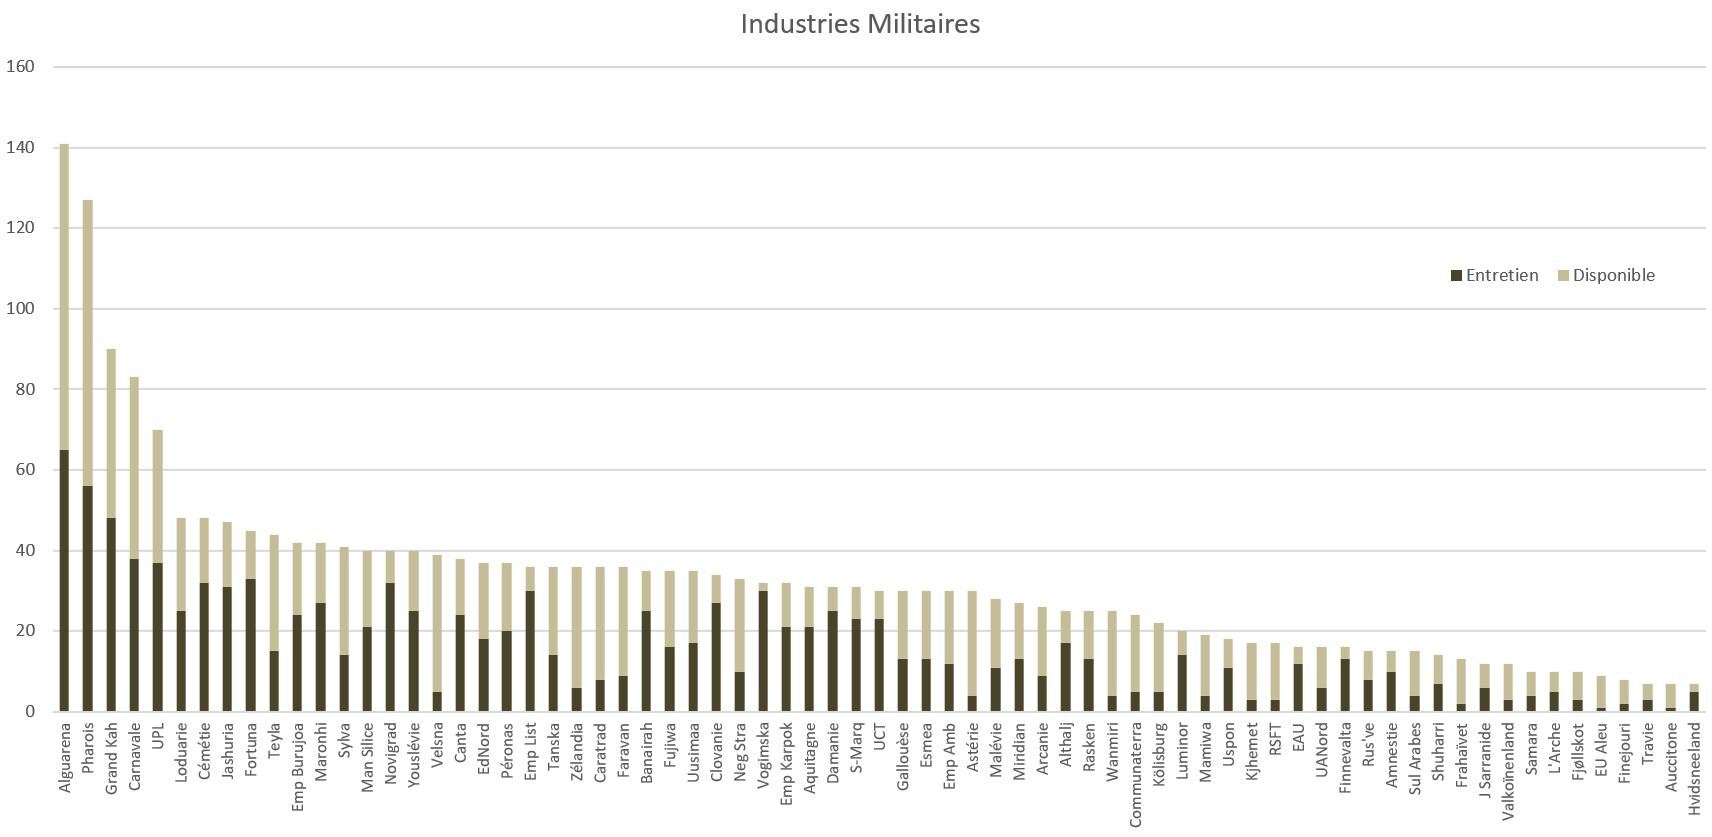 Industries Militaires - Capacités de production nationales